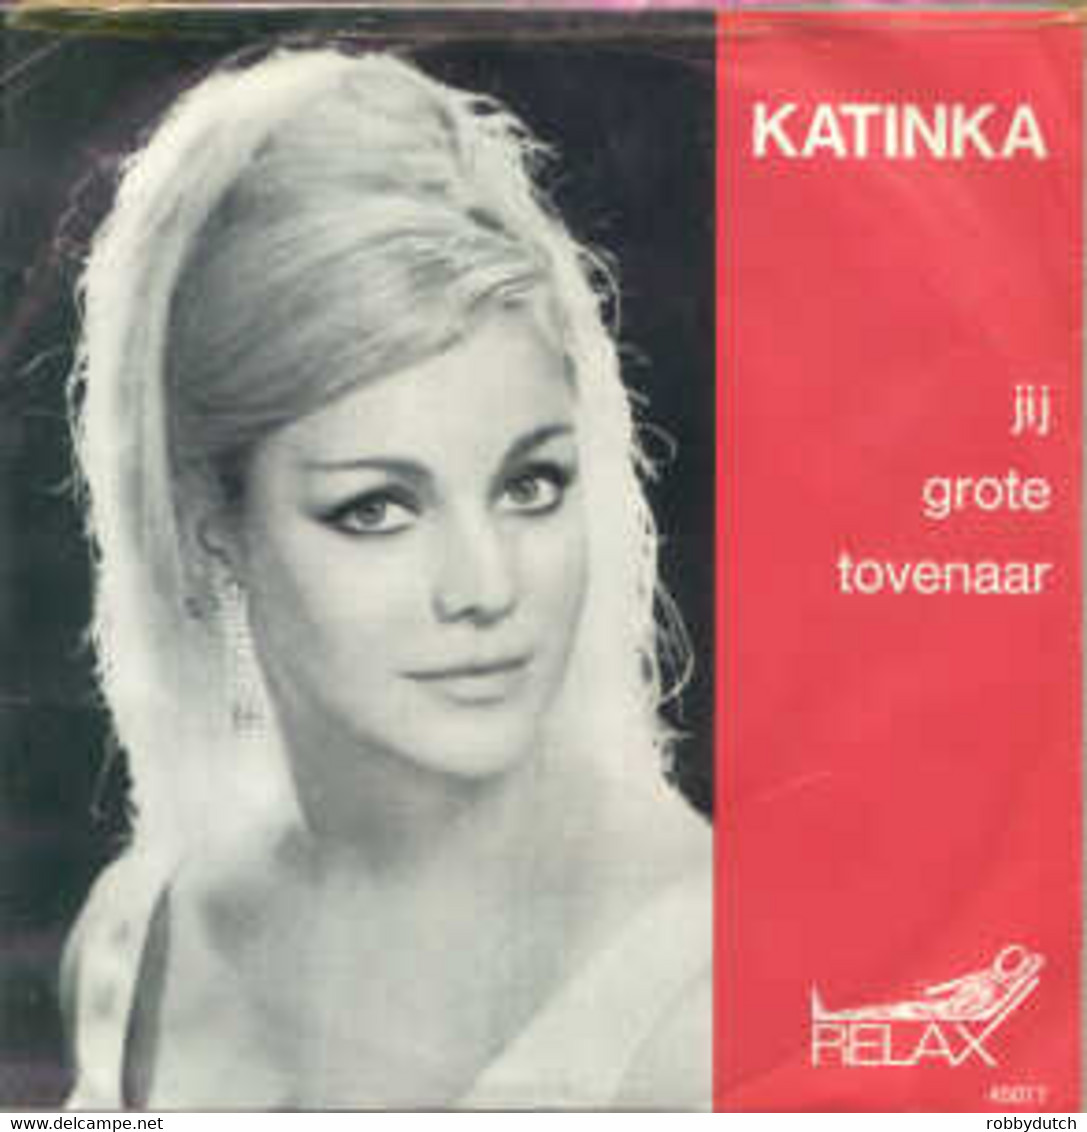 * 7" * KATINKA - IK BEN EEN HEKS / JIJ GROTE TOVENAAR - Other - Dutch Music